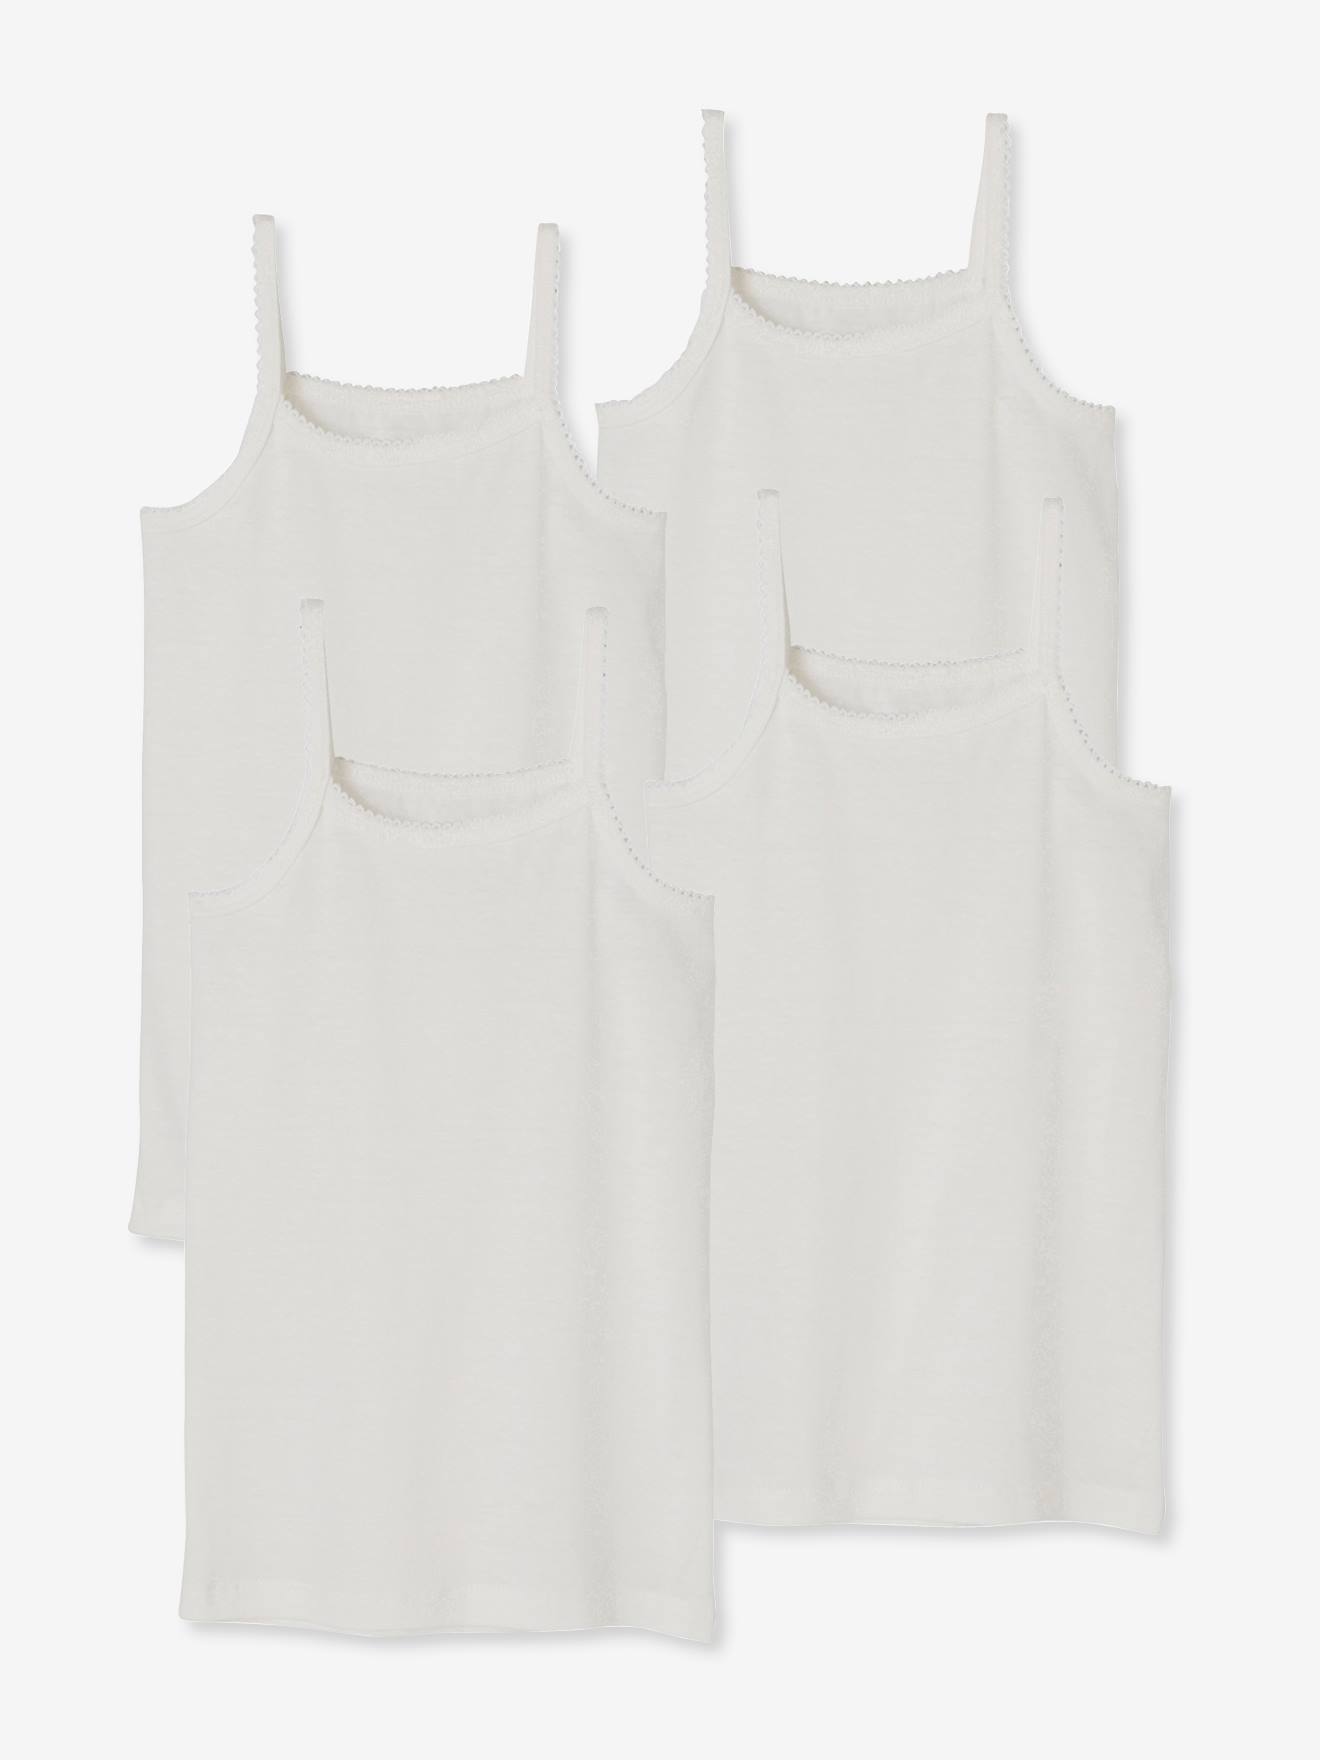 Pack of 4 Girls' Vest Tops - white, Girls